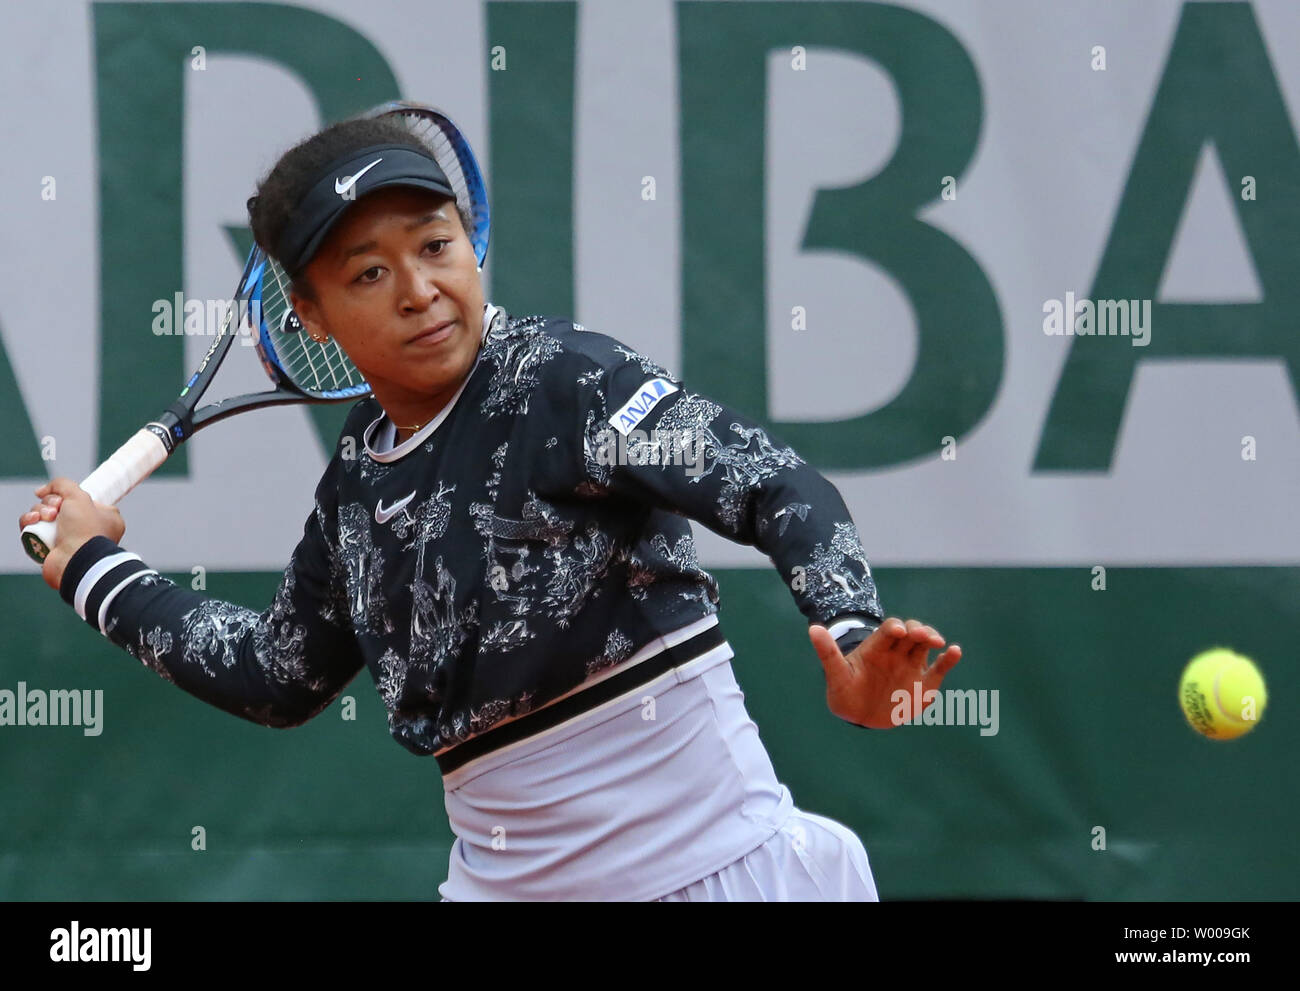 Naomi Osaka du Japon hits un tir pendant son français Open de premier tour match contre Anna Karolina Schmiedlova de Slovaquie à Roland Garros à Paris le 28 mai 2019. Osaka a défait Schmiedlova 0-6, 7-6 (4), 6-1 à l'avance à la deuxième ronde. Photo de David Silpa/UPI Banque D'Images